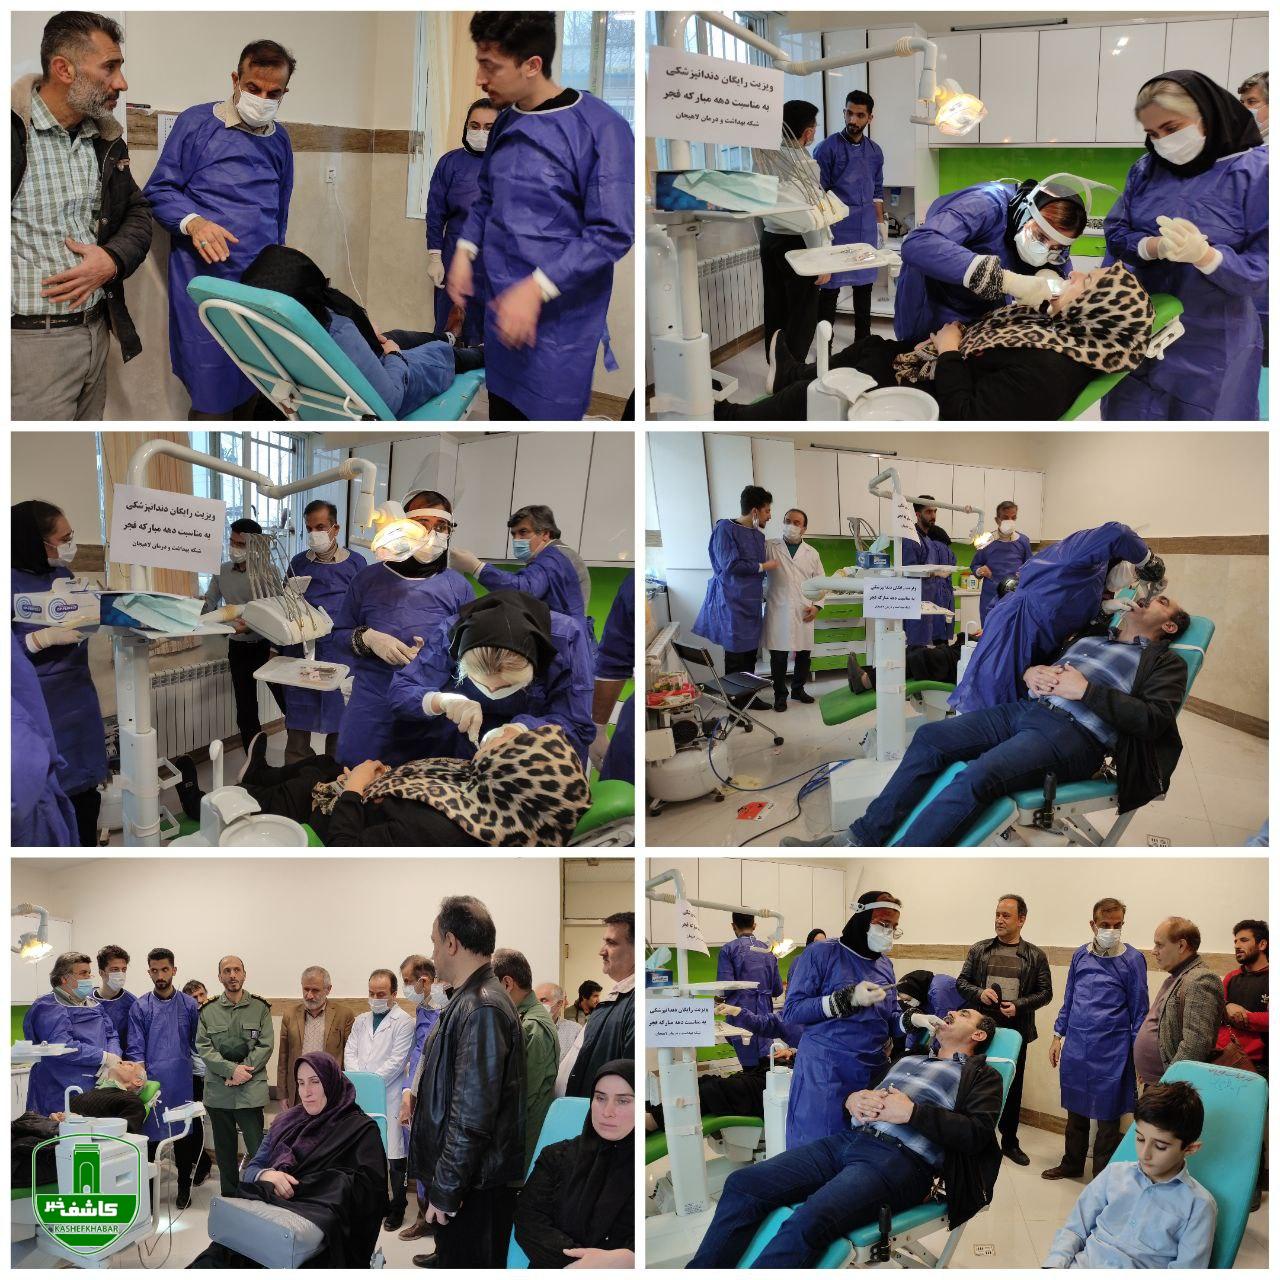 به مناسبت دهه مبارکه فجر در لاهیجان به انجام رسید؛ ویزیت رایگان و ارائه خدمات دندانپزشکی برای جمعیت تحت پوشش روستای بارکوسرا